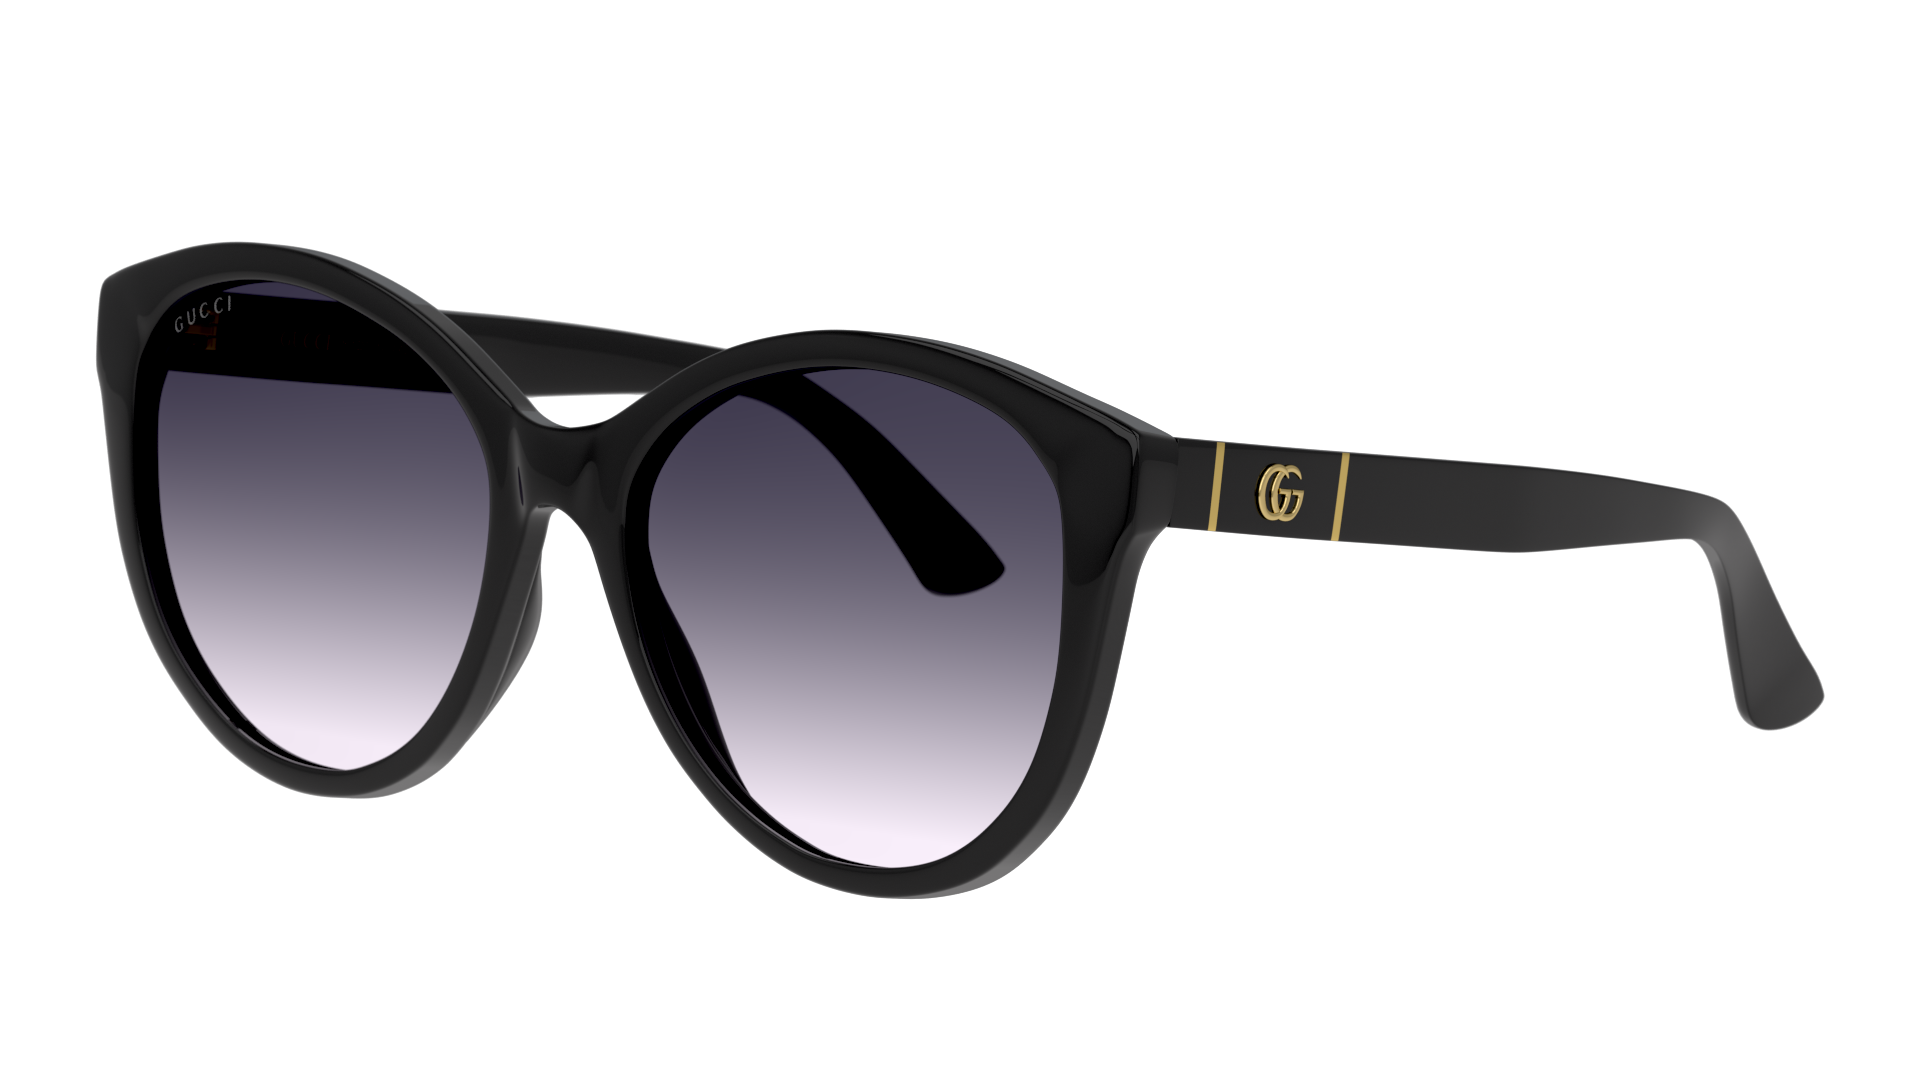 Angle_Left01 Gucci GG 0631S (001) Sunglasses Grey / Black